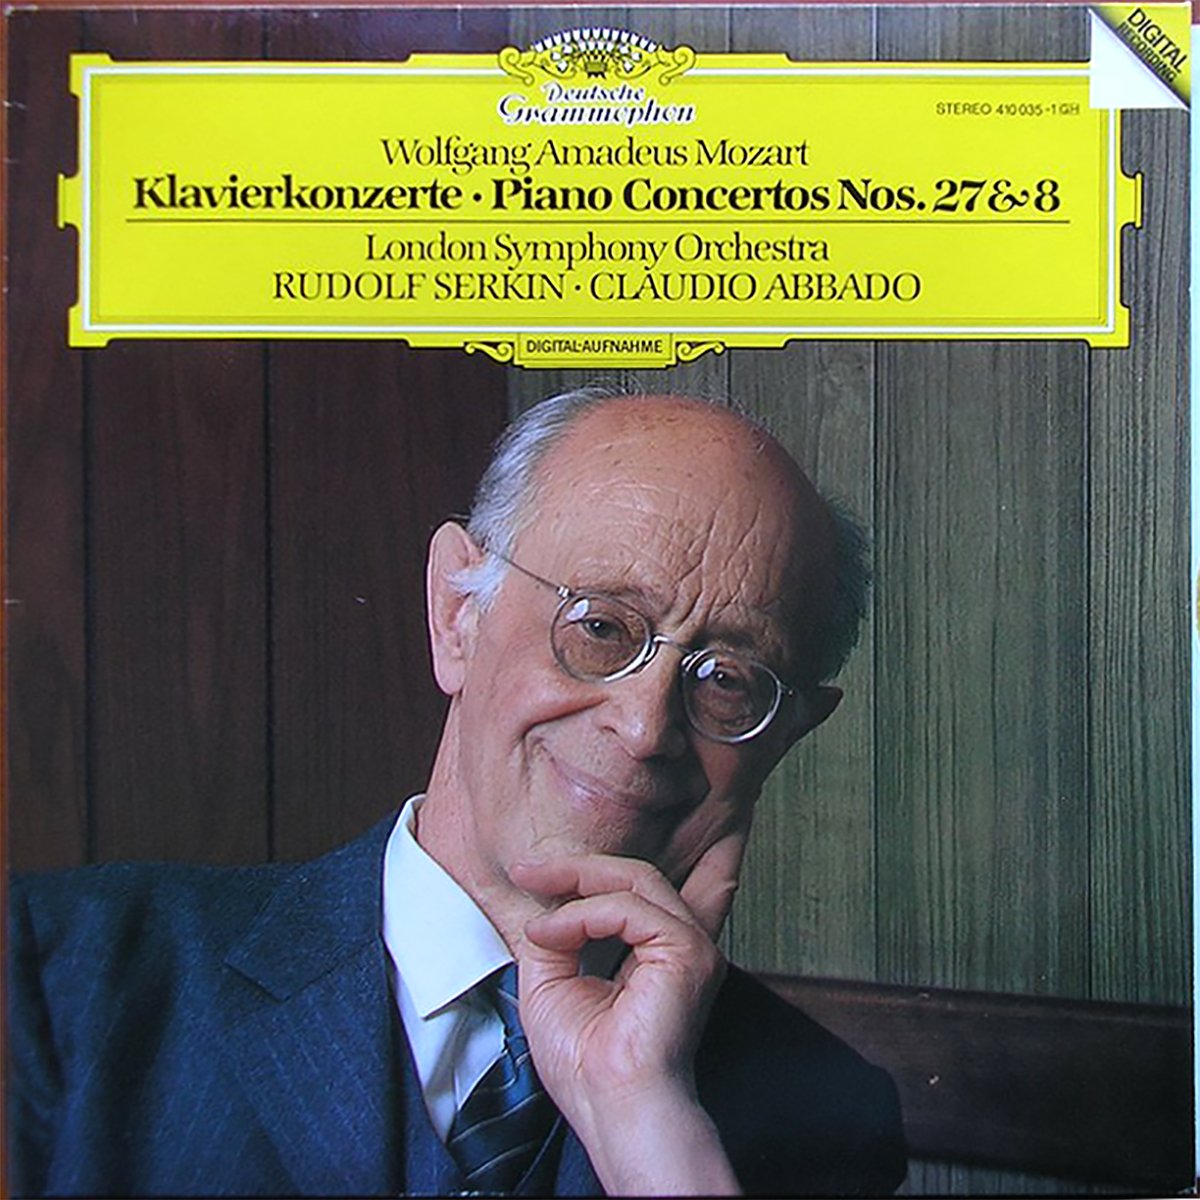 DGG 410 035 Mozart Concertos Piano 27 & 8 Serkin Abbado DGG Digital Aufnahme